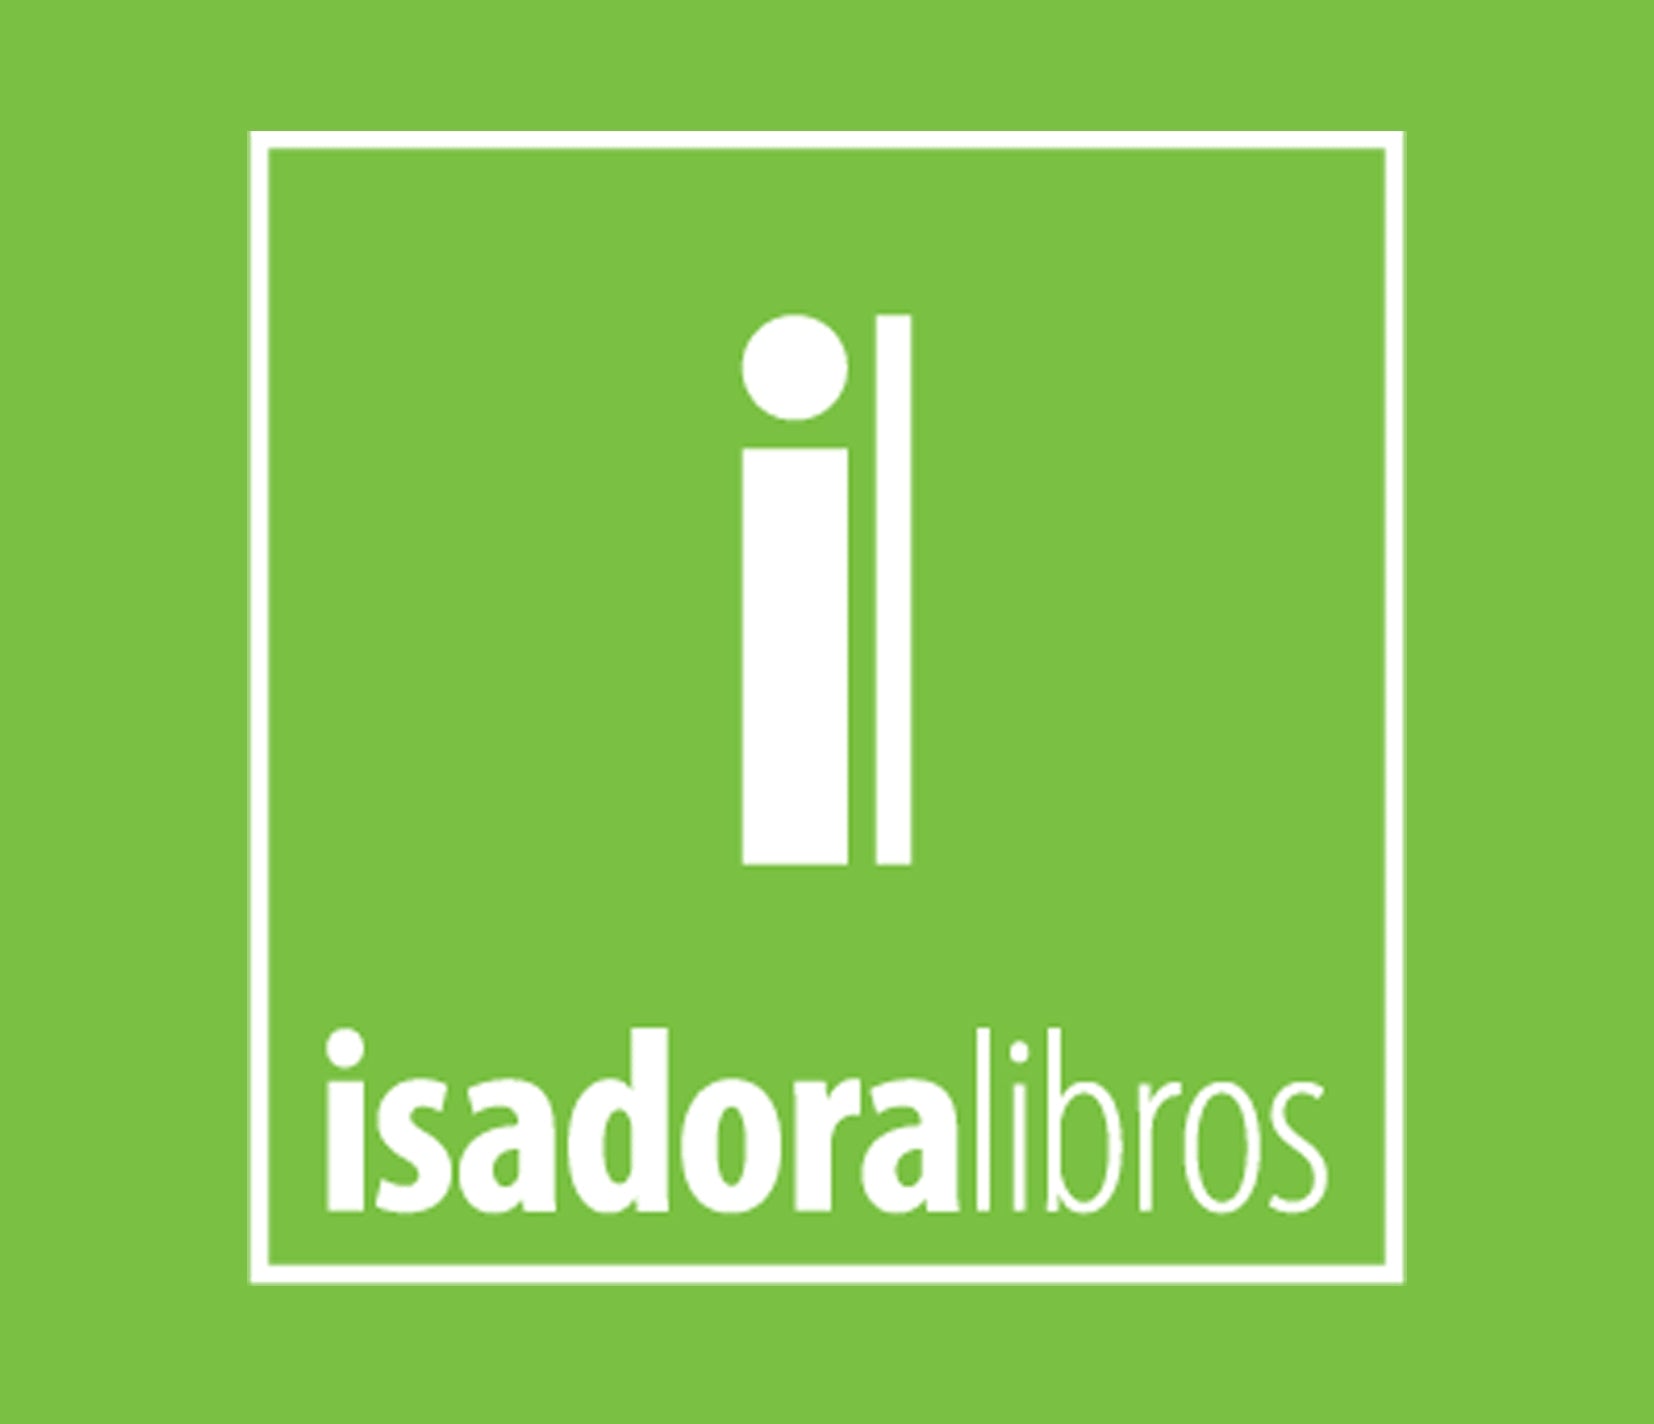 Isadoralibros store logo